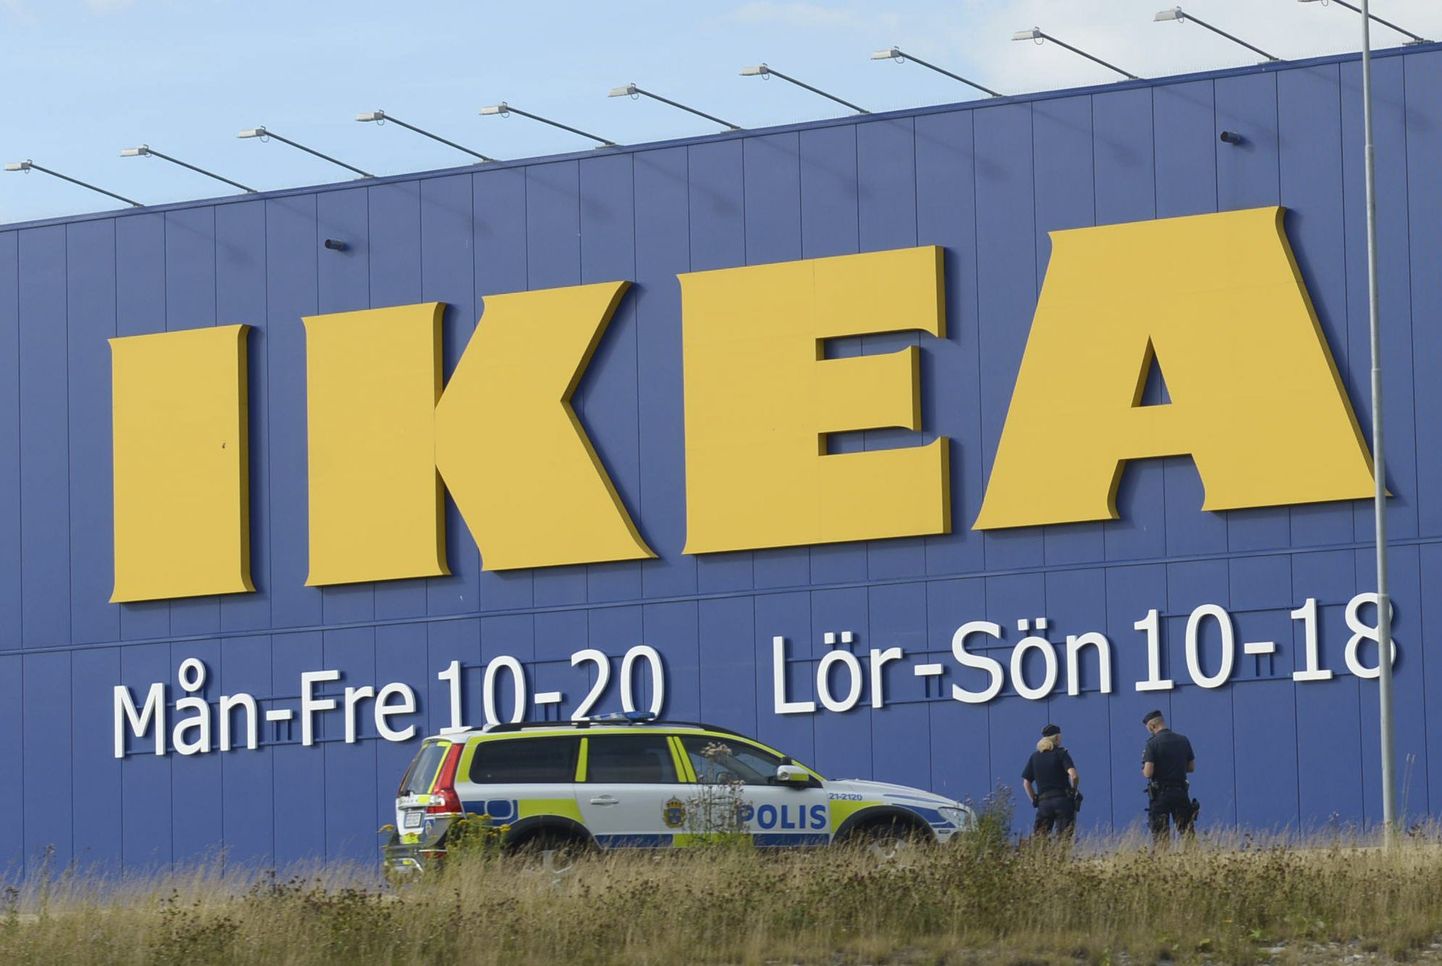 IKEA - крупнейшая в мире розничная сеть по торговле мебелью и предметами домашнего обихода, основана в 1943 году в Швеции.